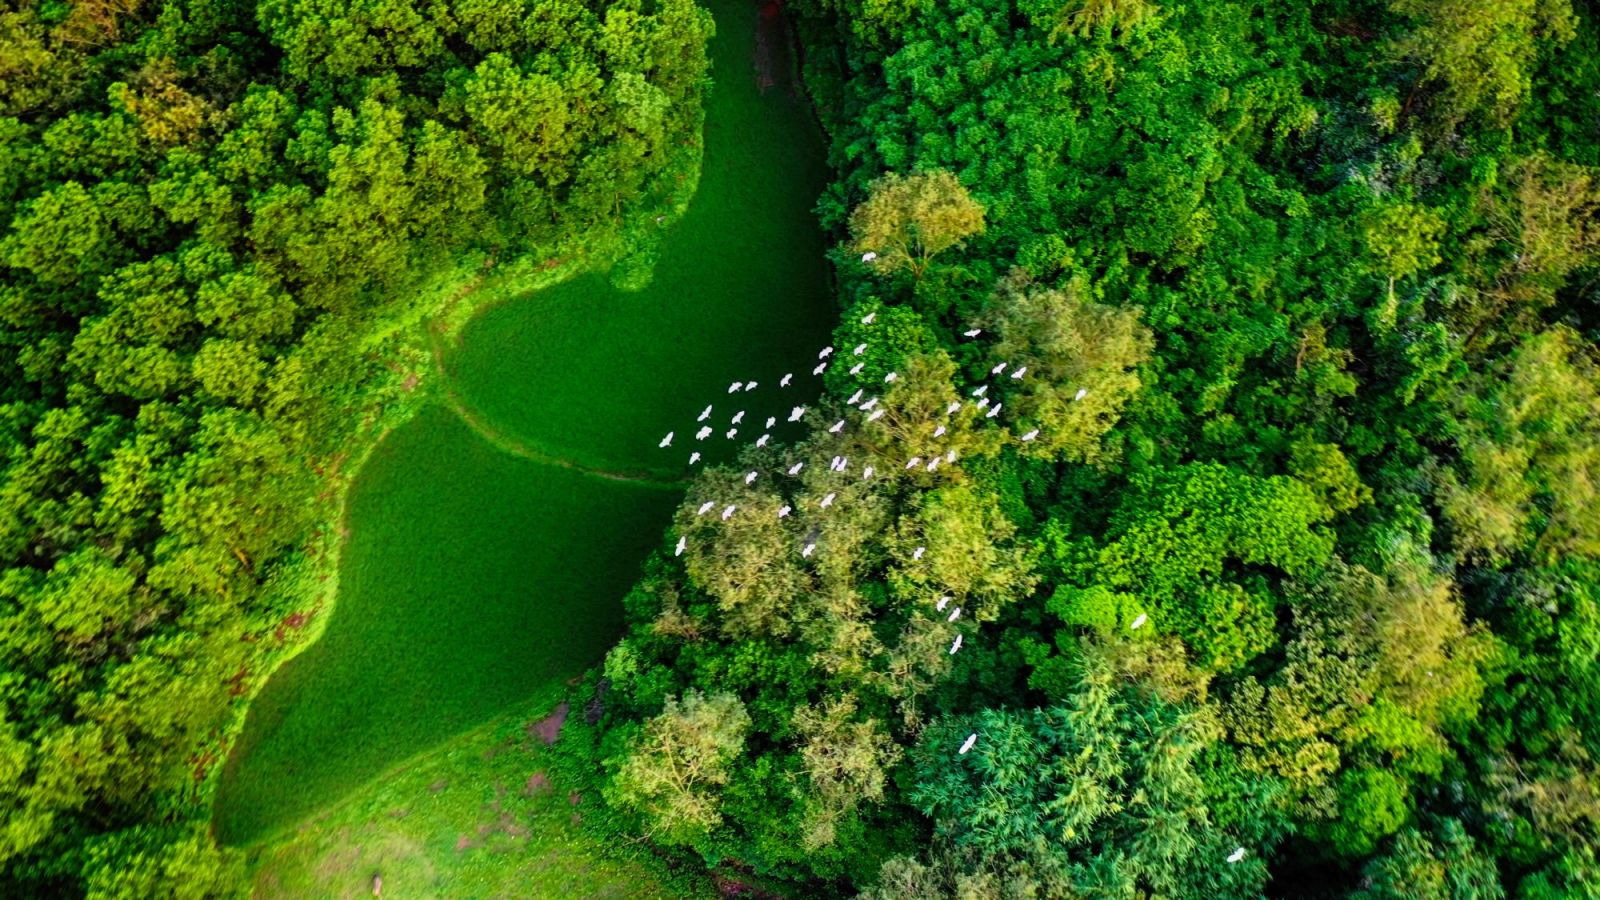 Cánh cò trắng bay trên rừng cây xanh ở núi Núi Hứa làm đẹp thêm bức tranh làng quê.